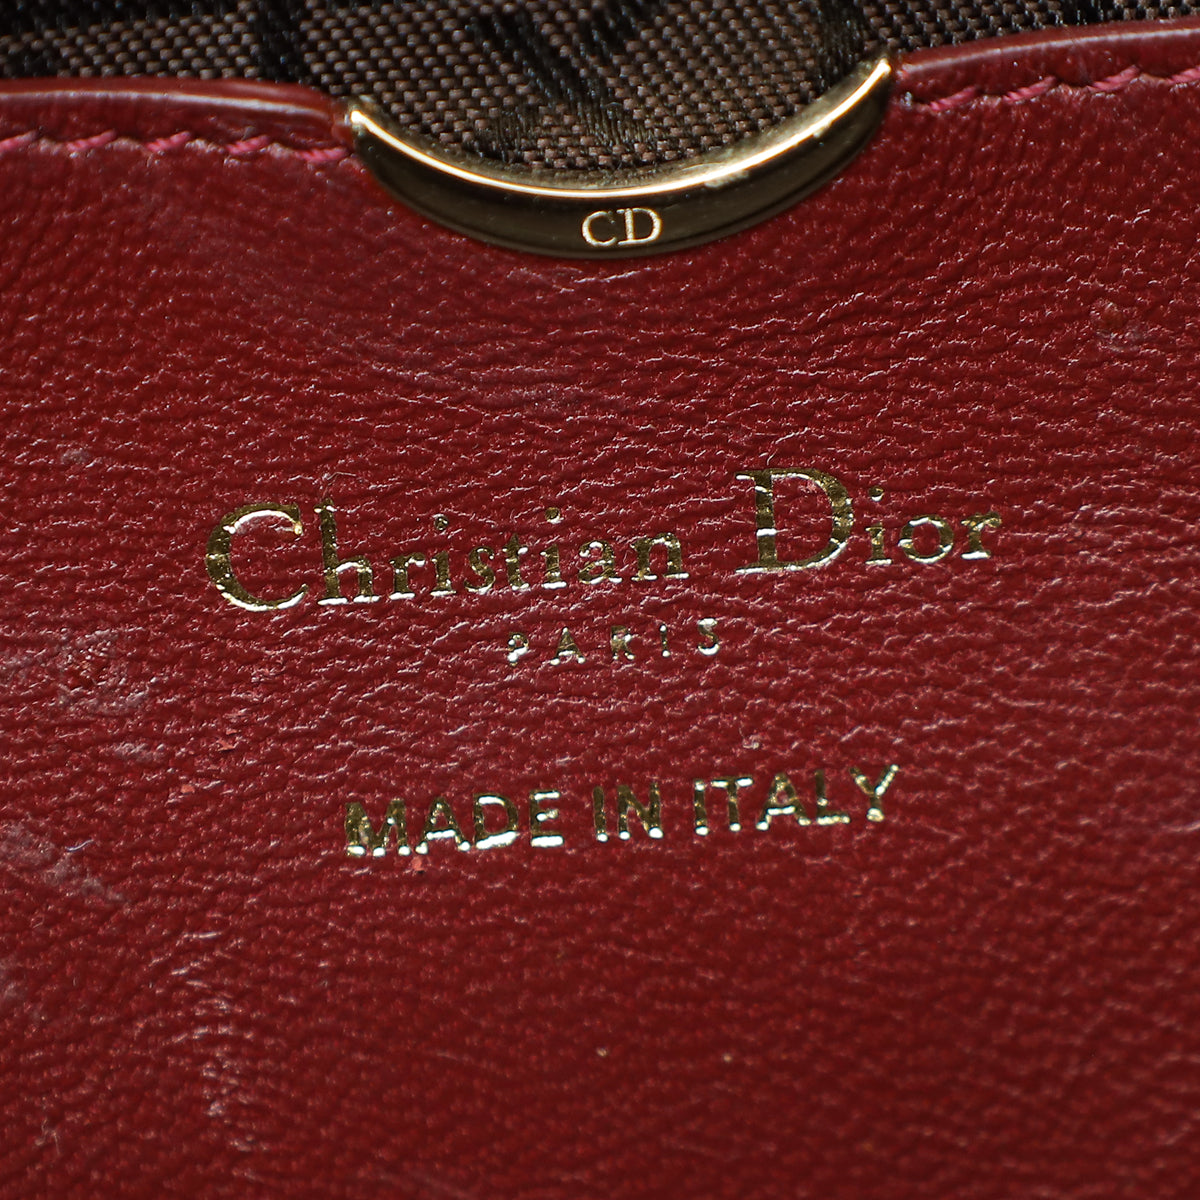 Christian Dior Burgundy Runway Medium Bag